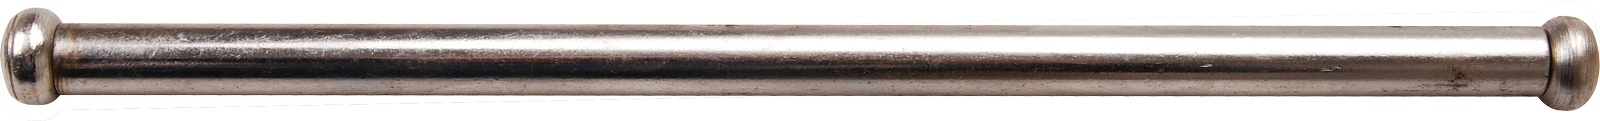 Stahlknebel für Schraubstöcke | 13 x 250 mm - BGS 59004